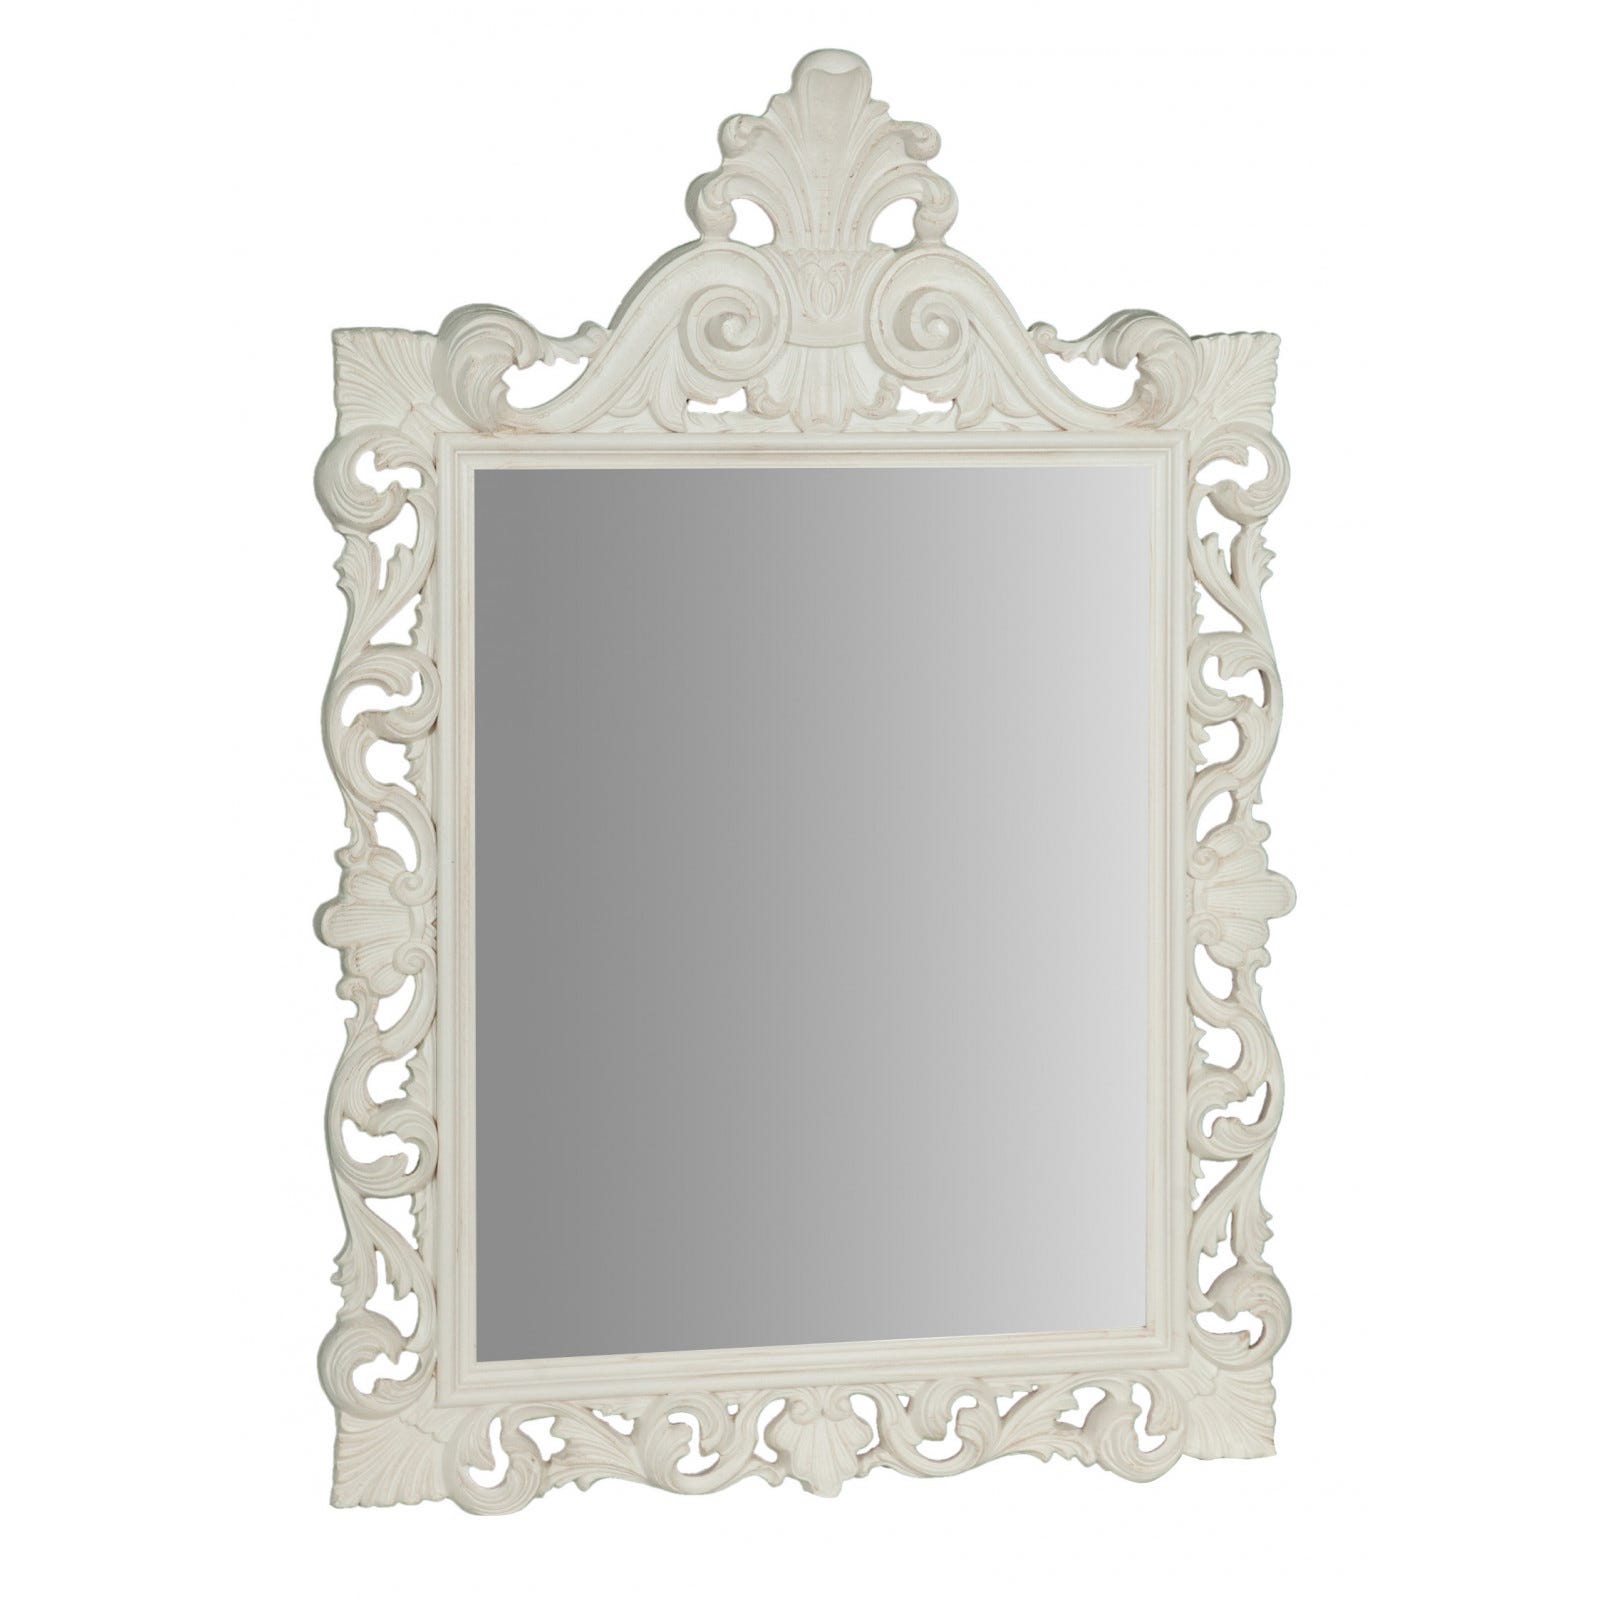 Specchio da parete 124x86x7 cm Made in Italy, Specchio shabby bianco  anticato, Specchio barocco, Specchio per bagno rettangolare